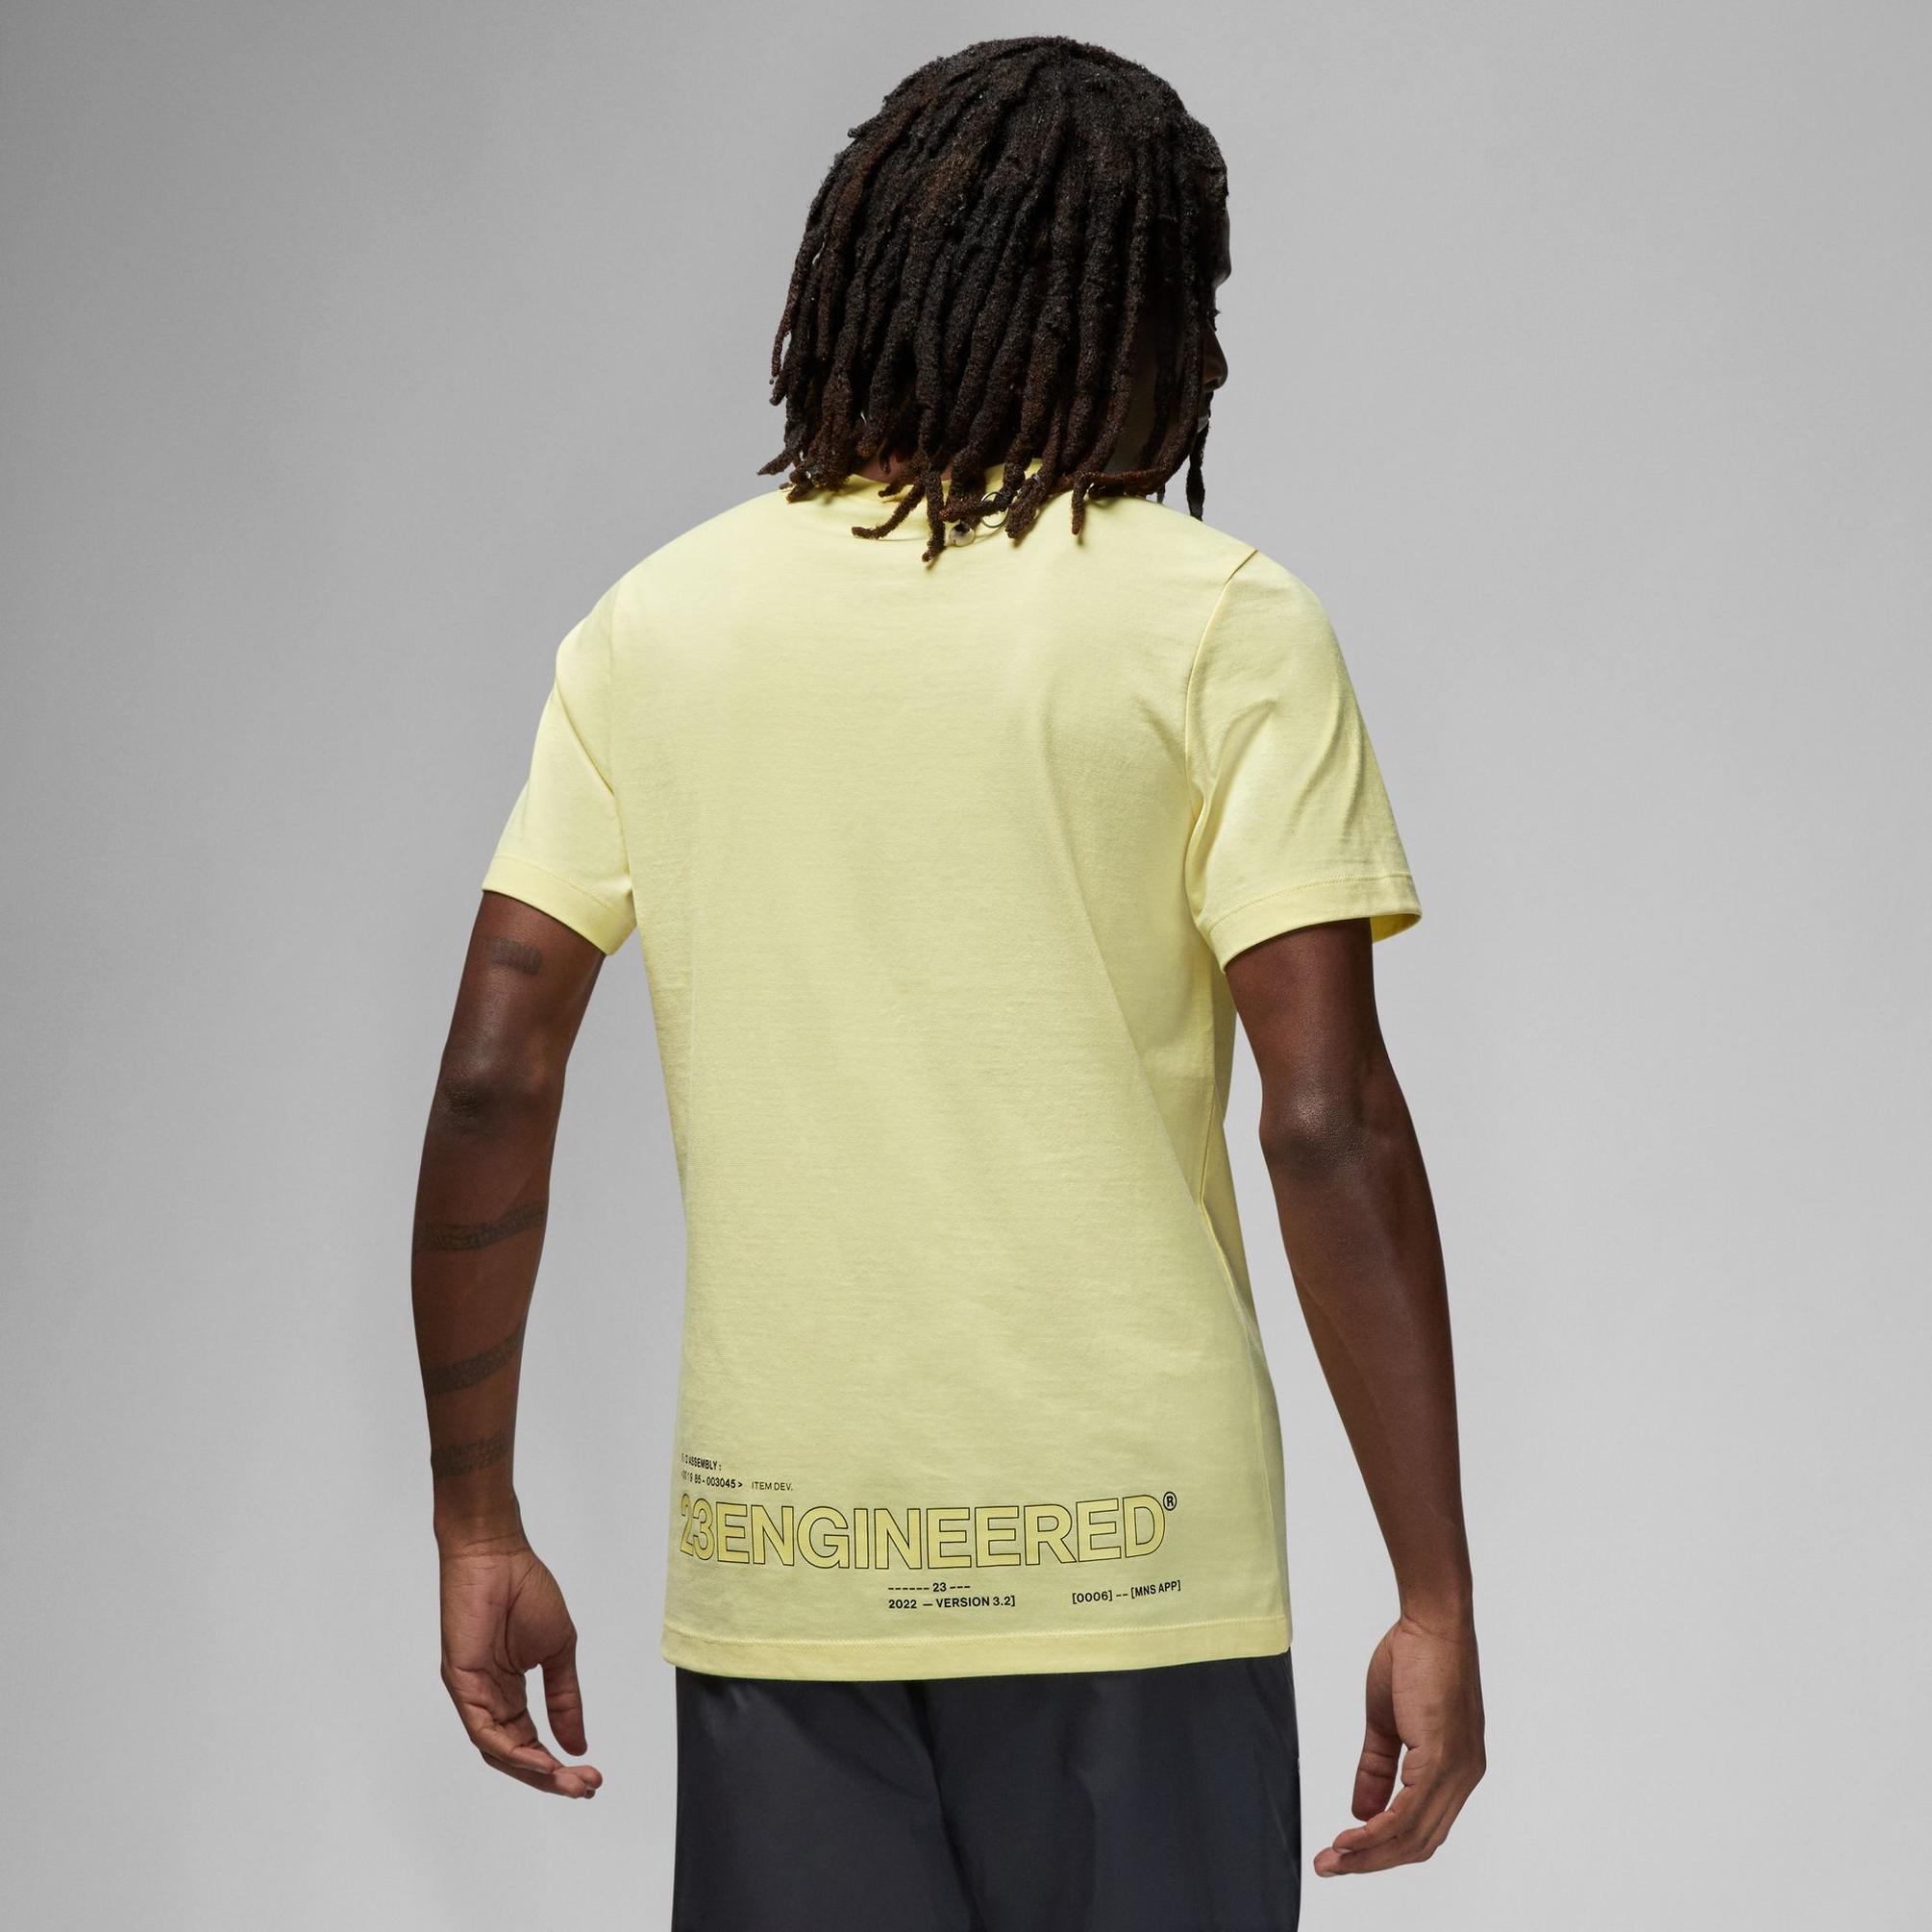  Jordan 23 Engineered Erkek Sarı T-Shirt